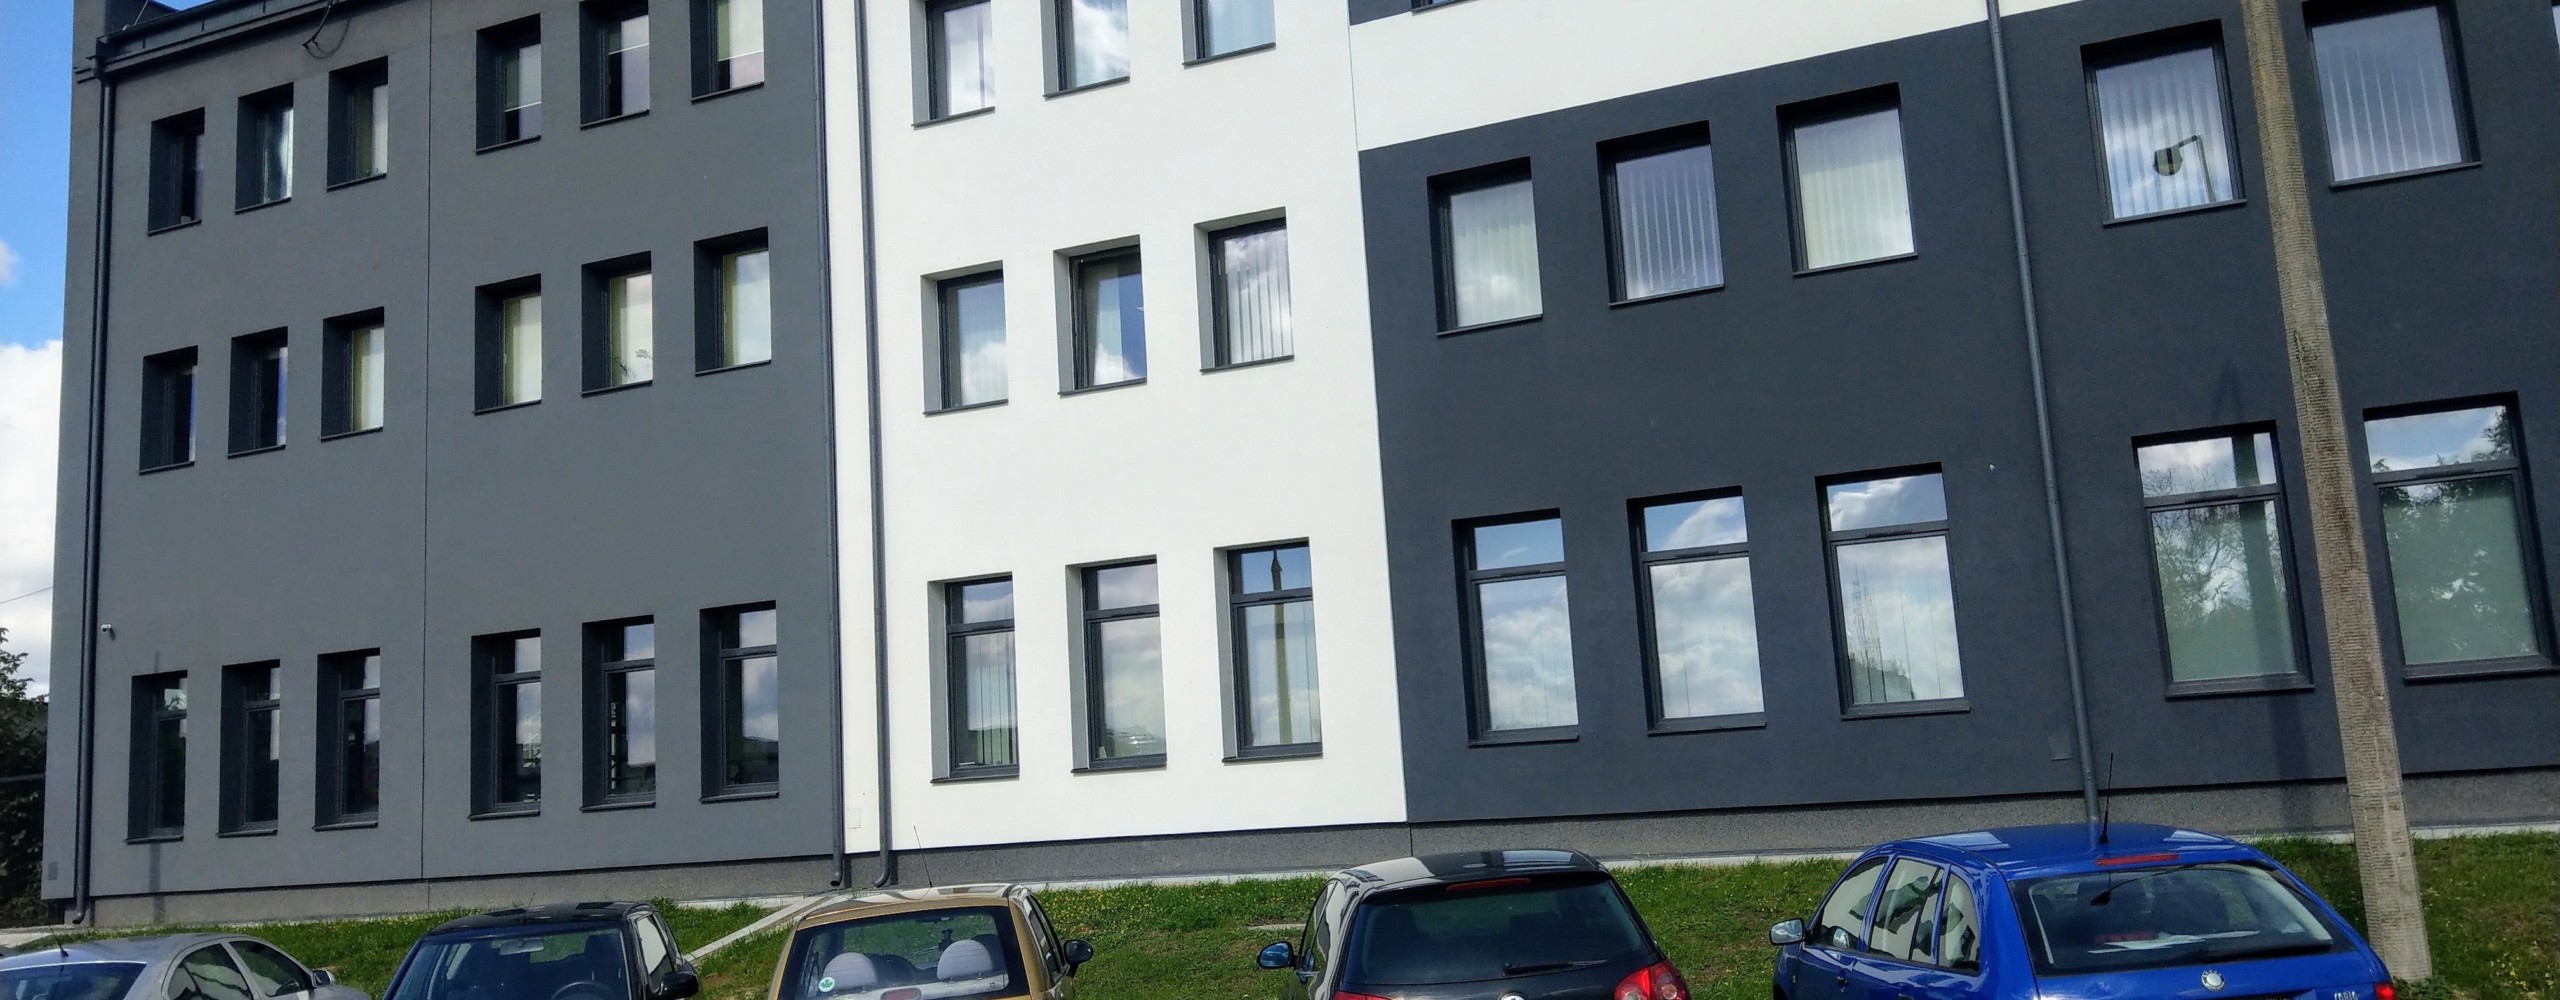 Biuro o powierzchni 11 m<sup>2</sup> - Farbud Nieruchomości - Lublin